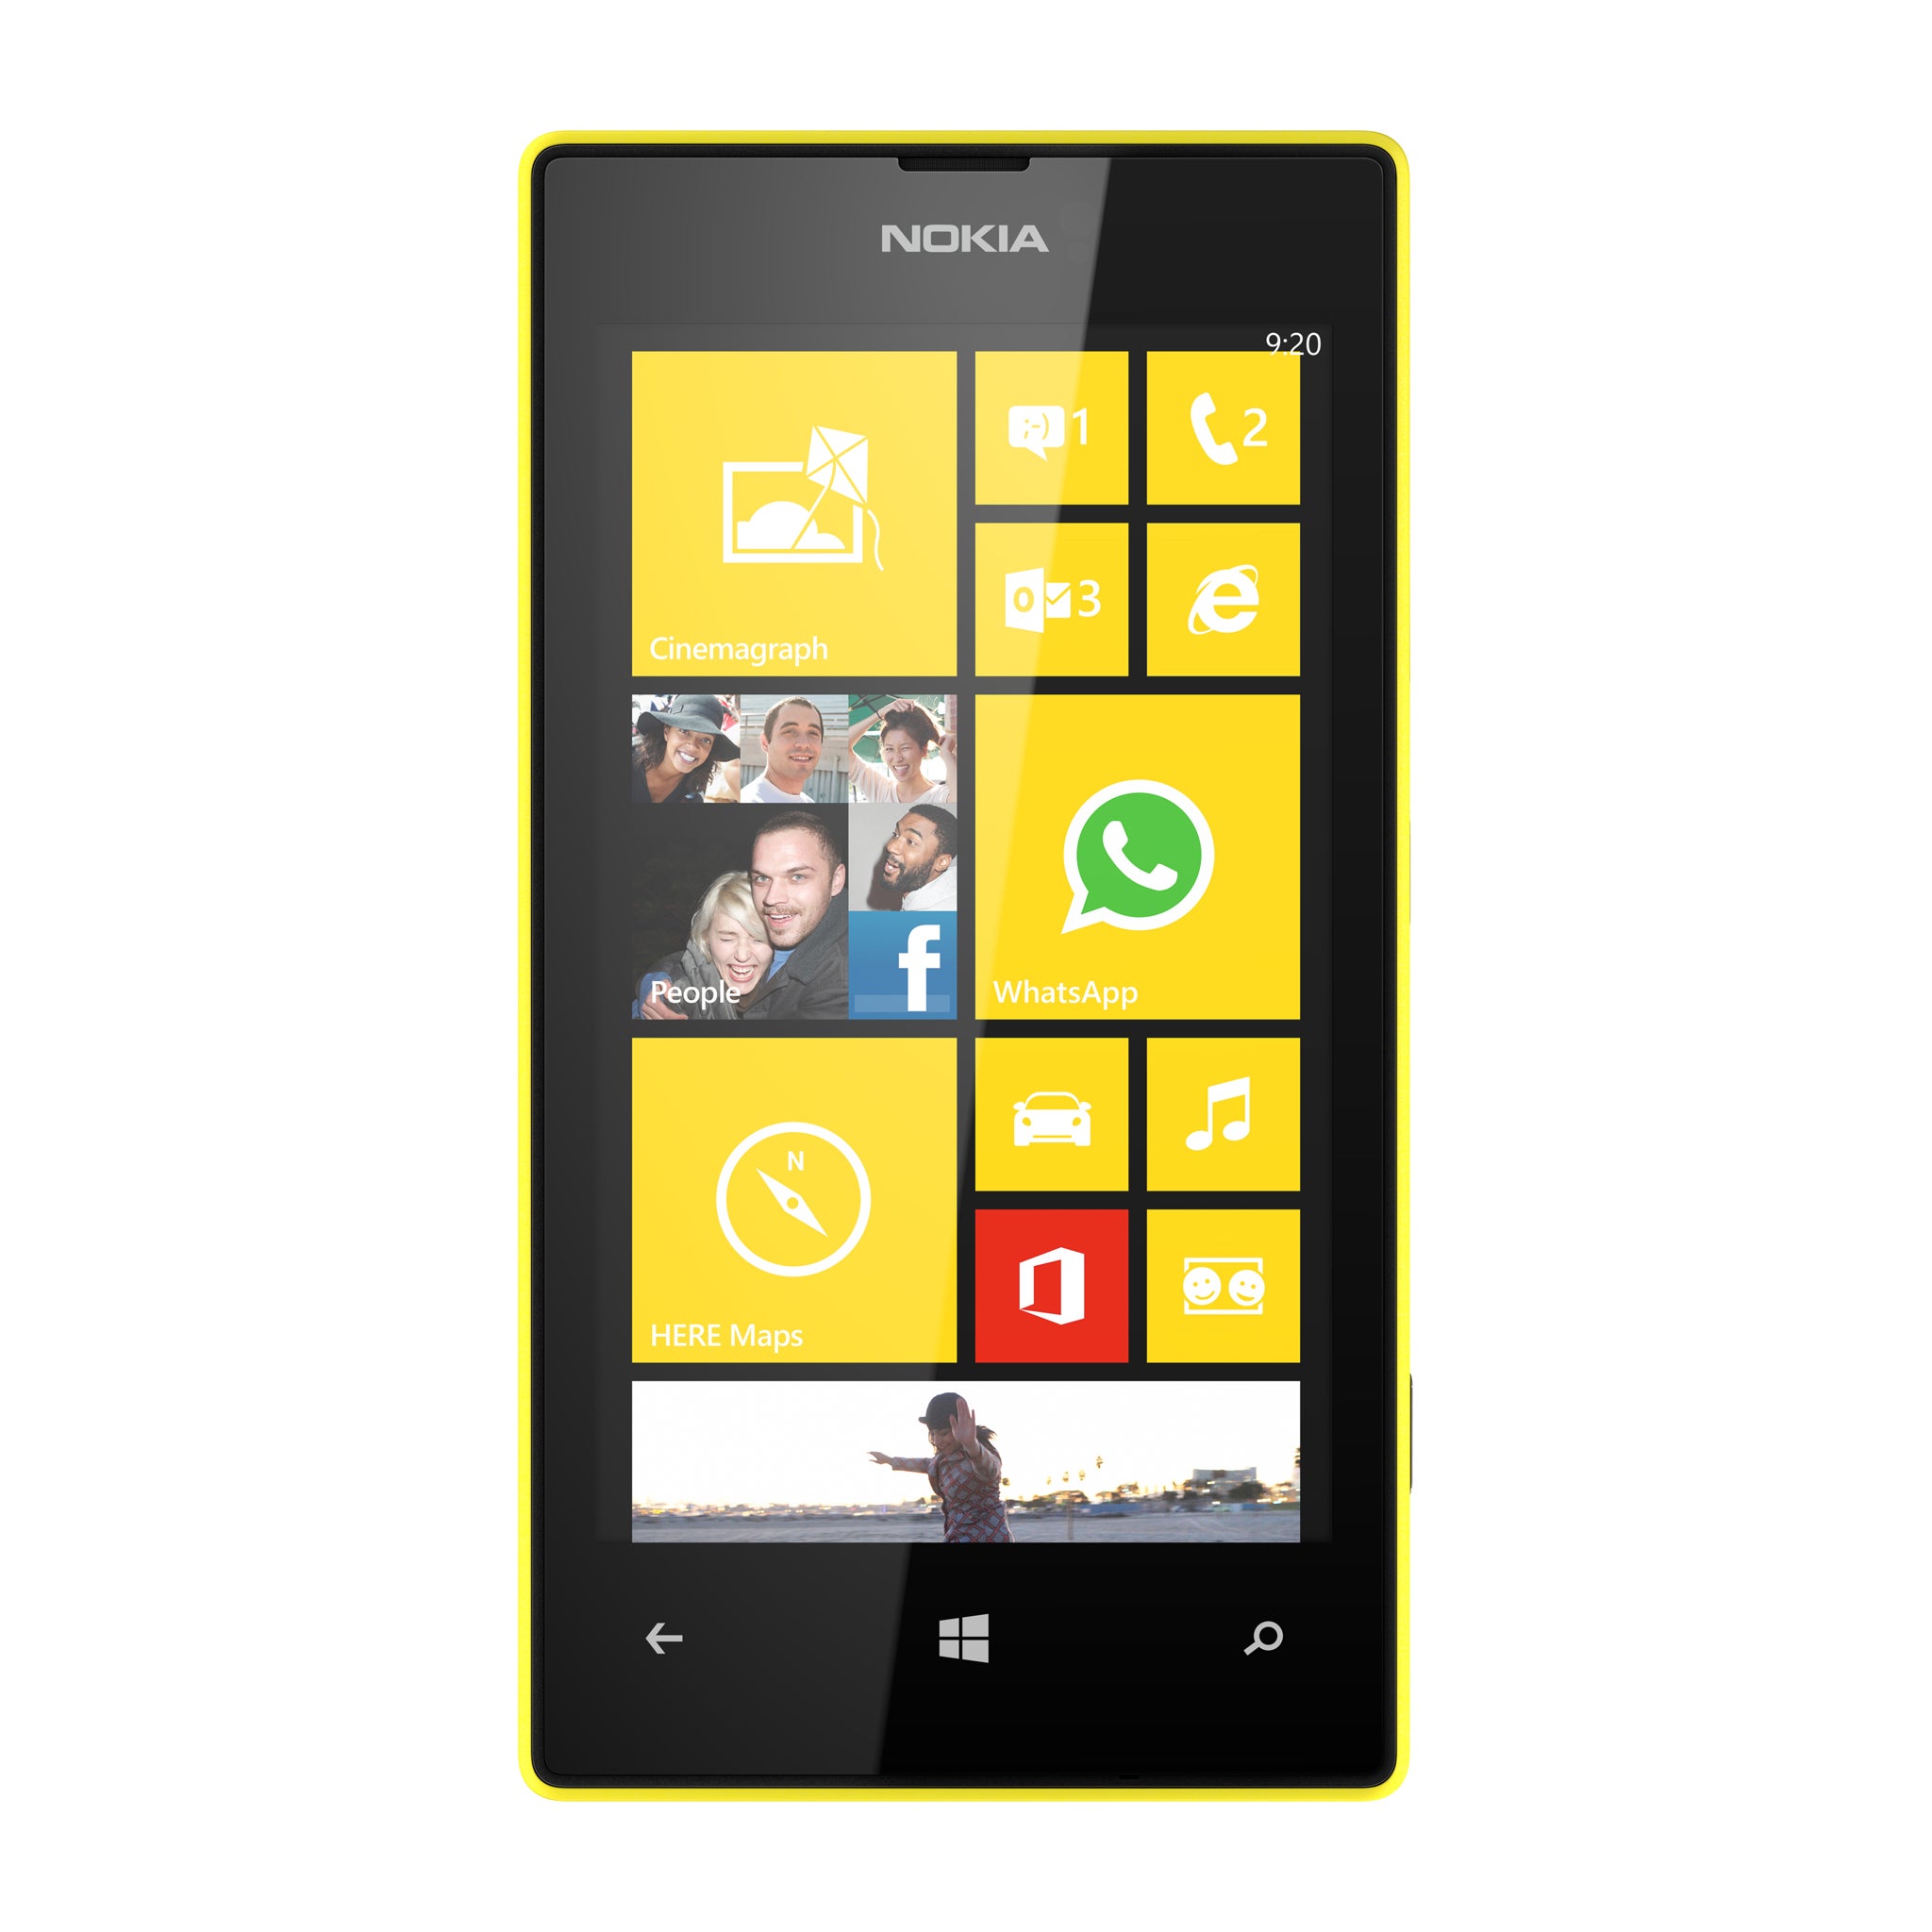 The new Nokia Lumia 520